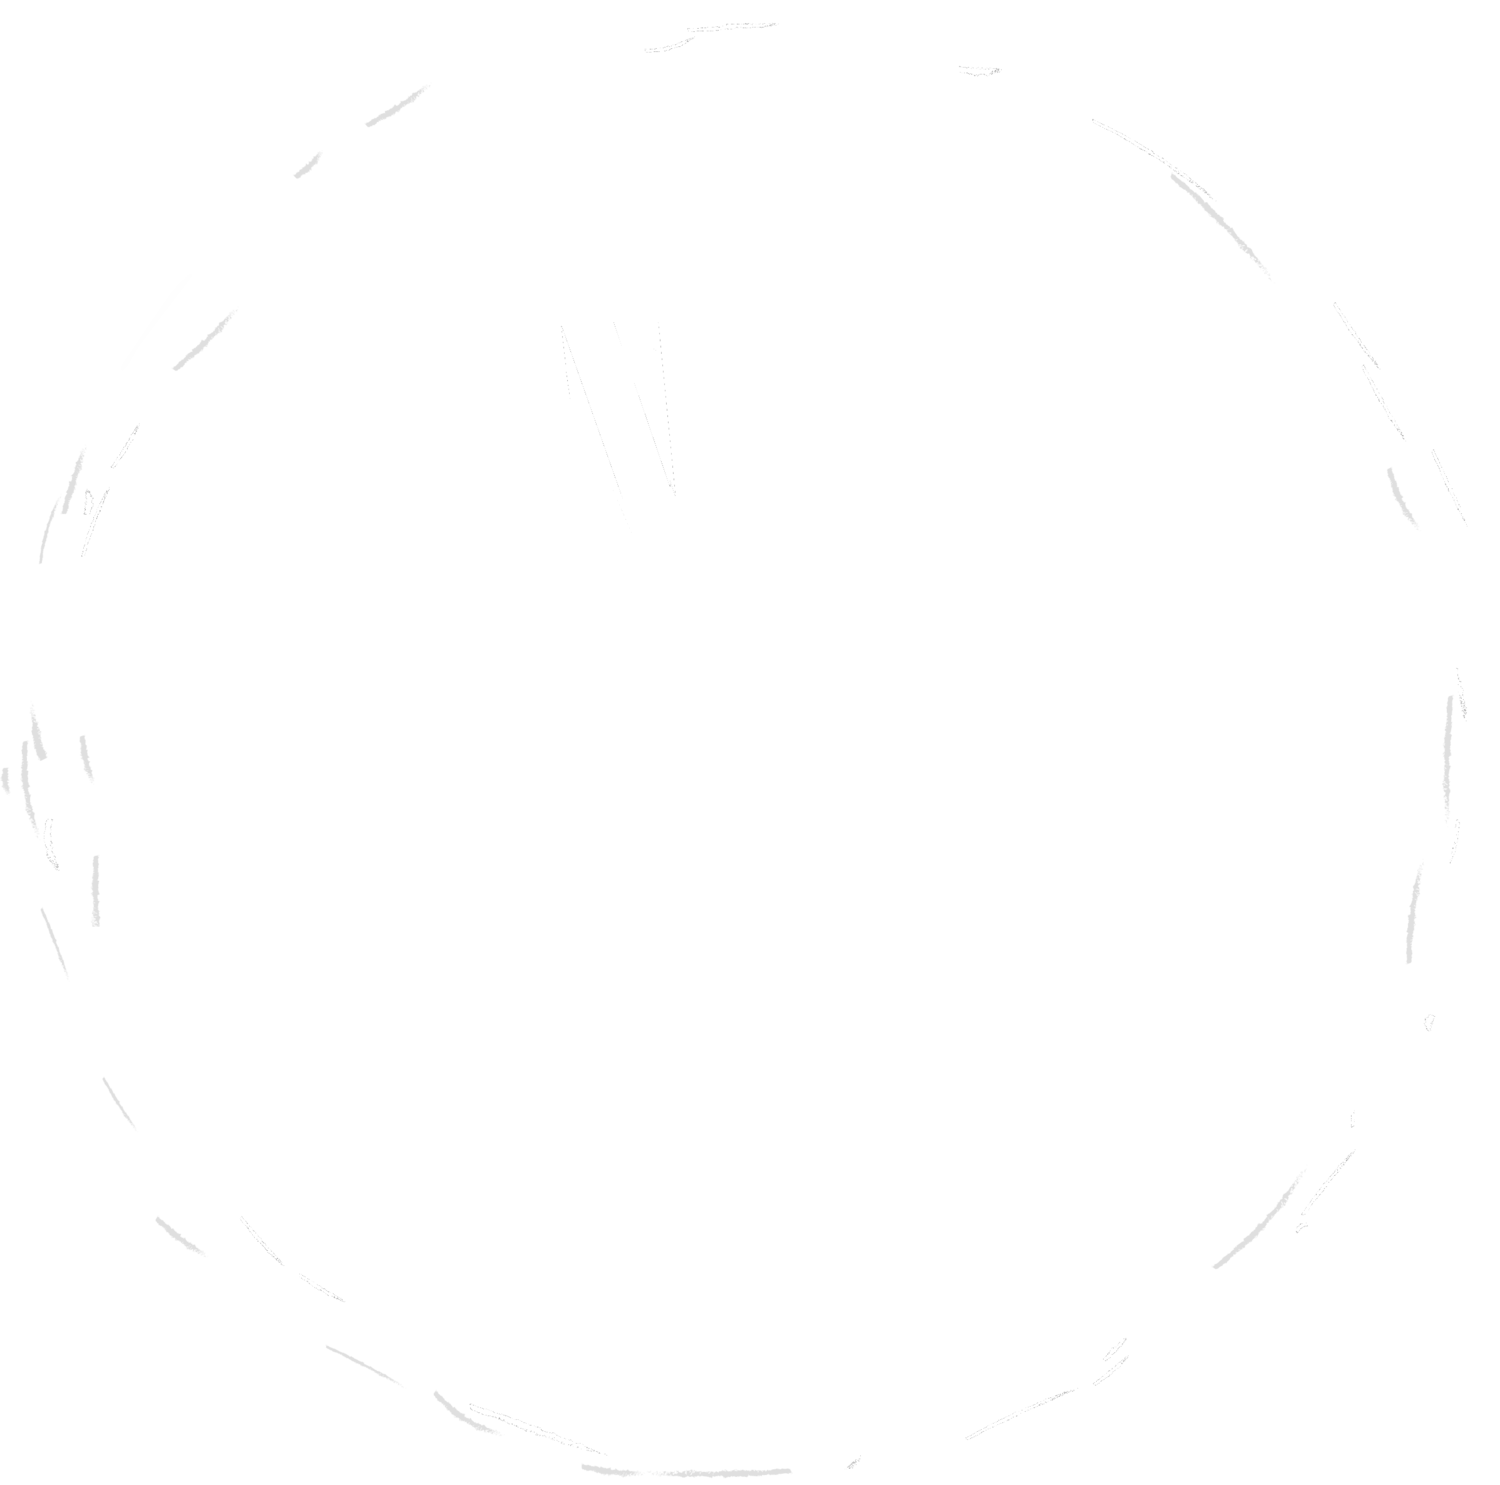 Tangled Senses